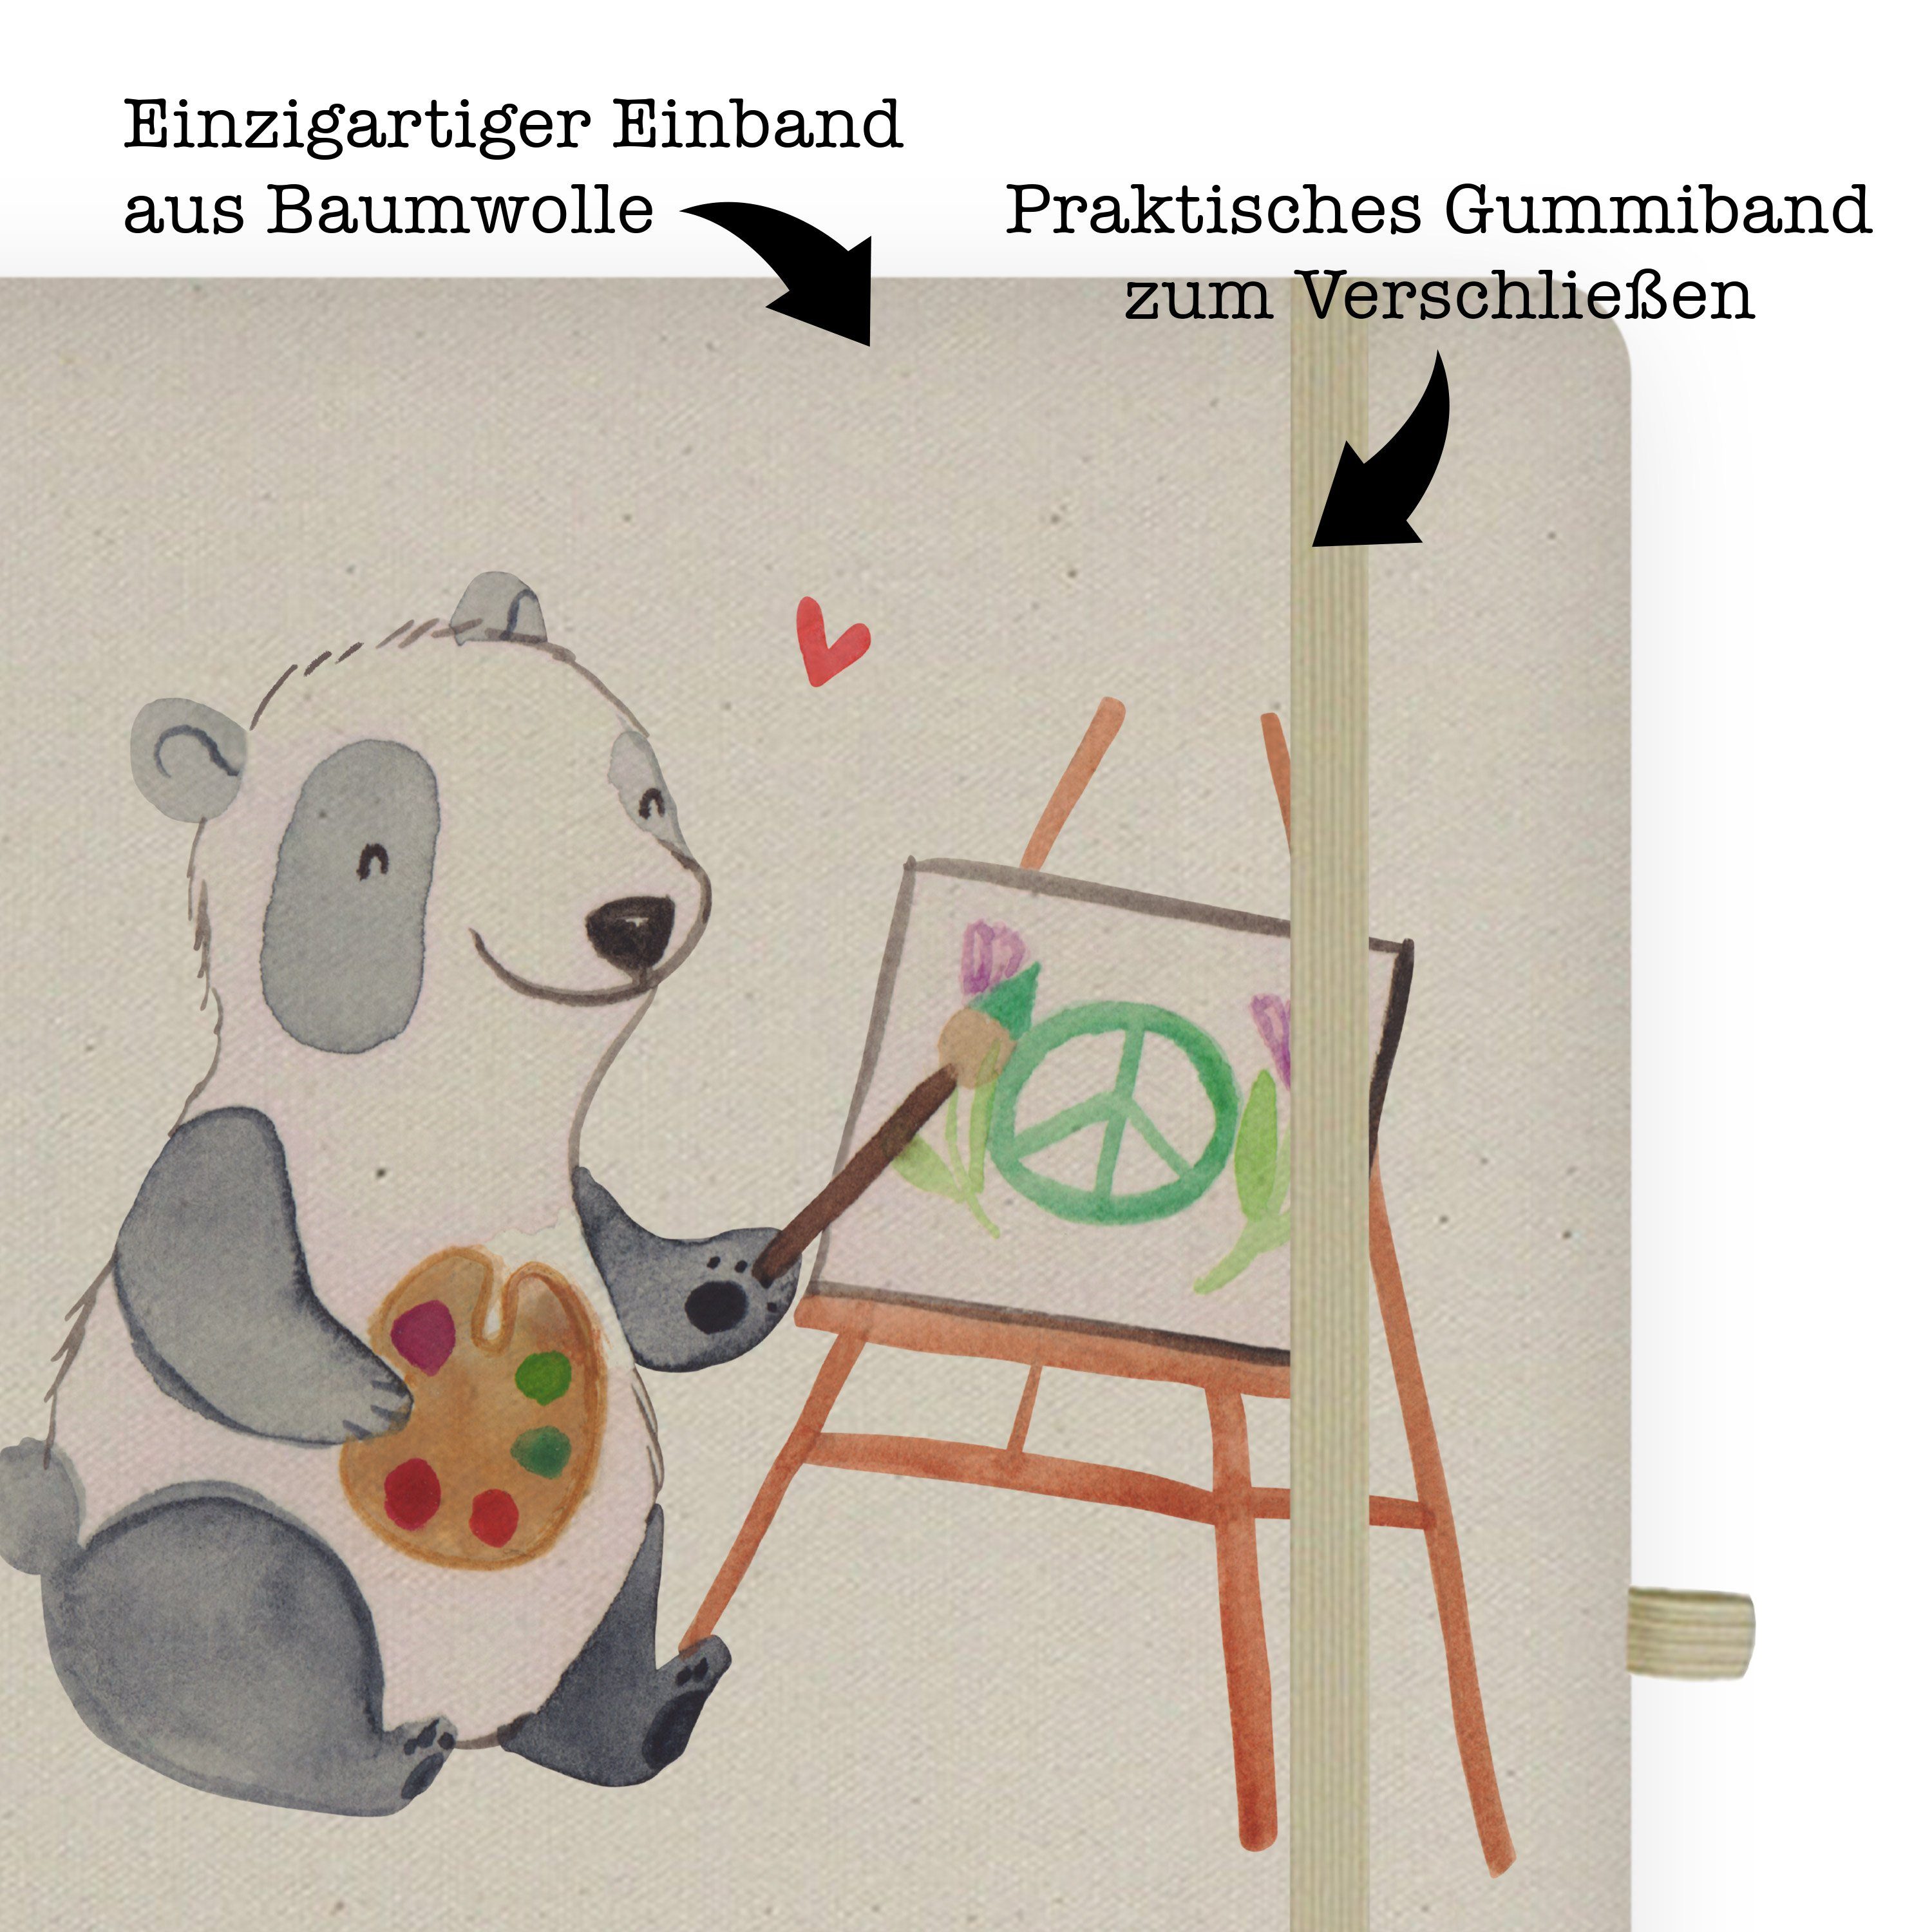 Mrs. Künstler Journal, Panda Notize Mrs. & Mr. Notizbuch - Transparent & Jubiläum, Panda Mr. - mit Herz Geschenk,